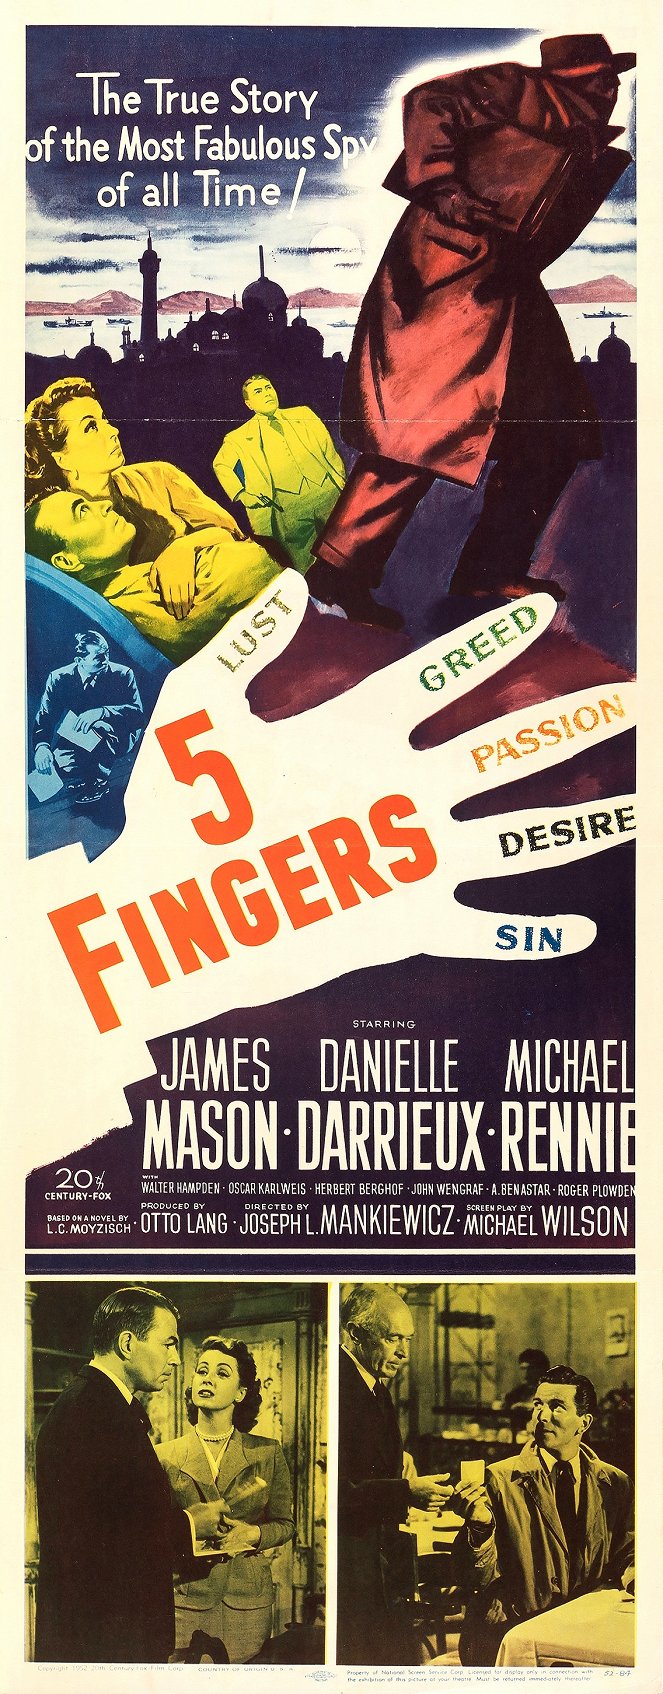 5 Fingers - Plakaty